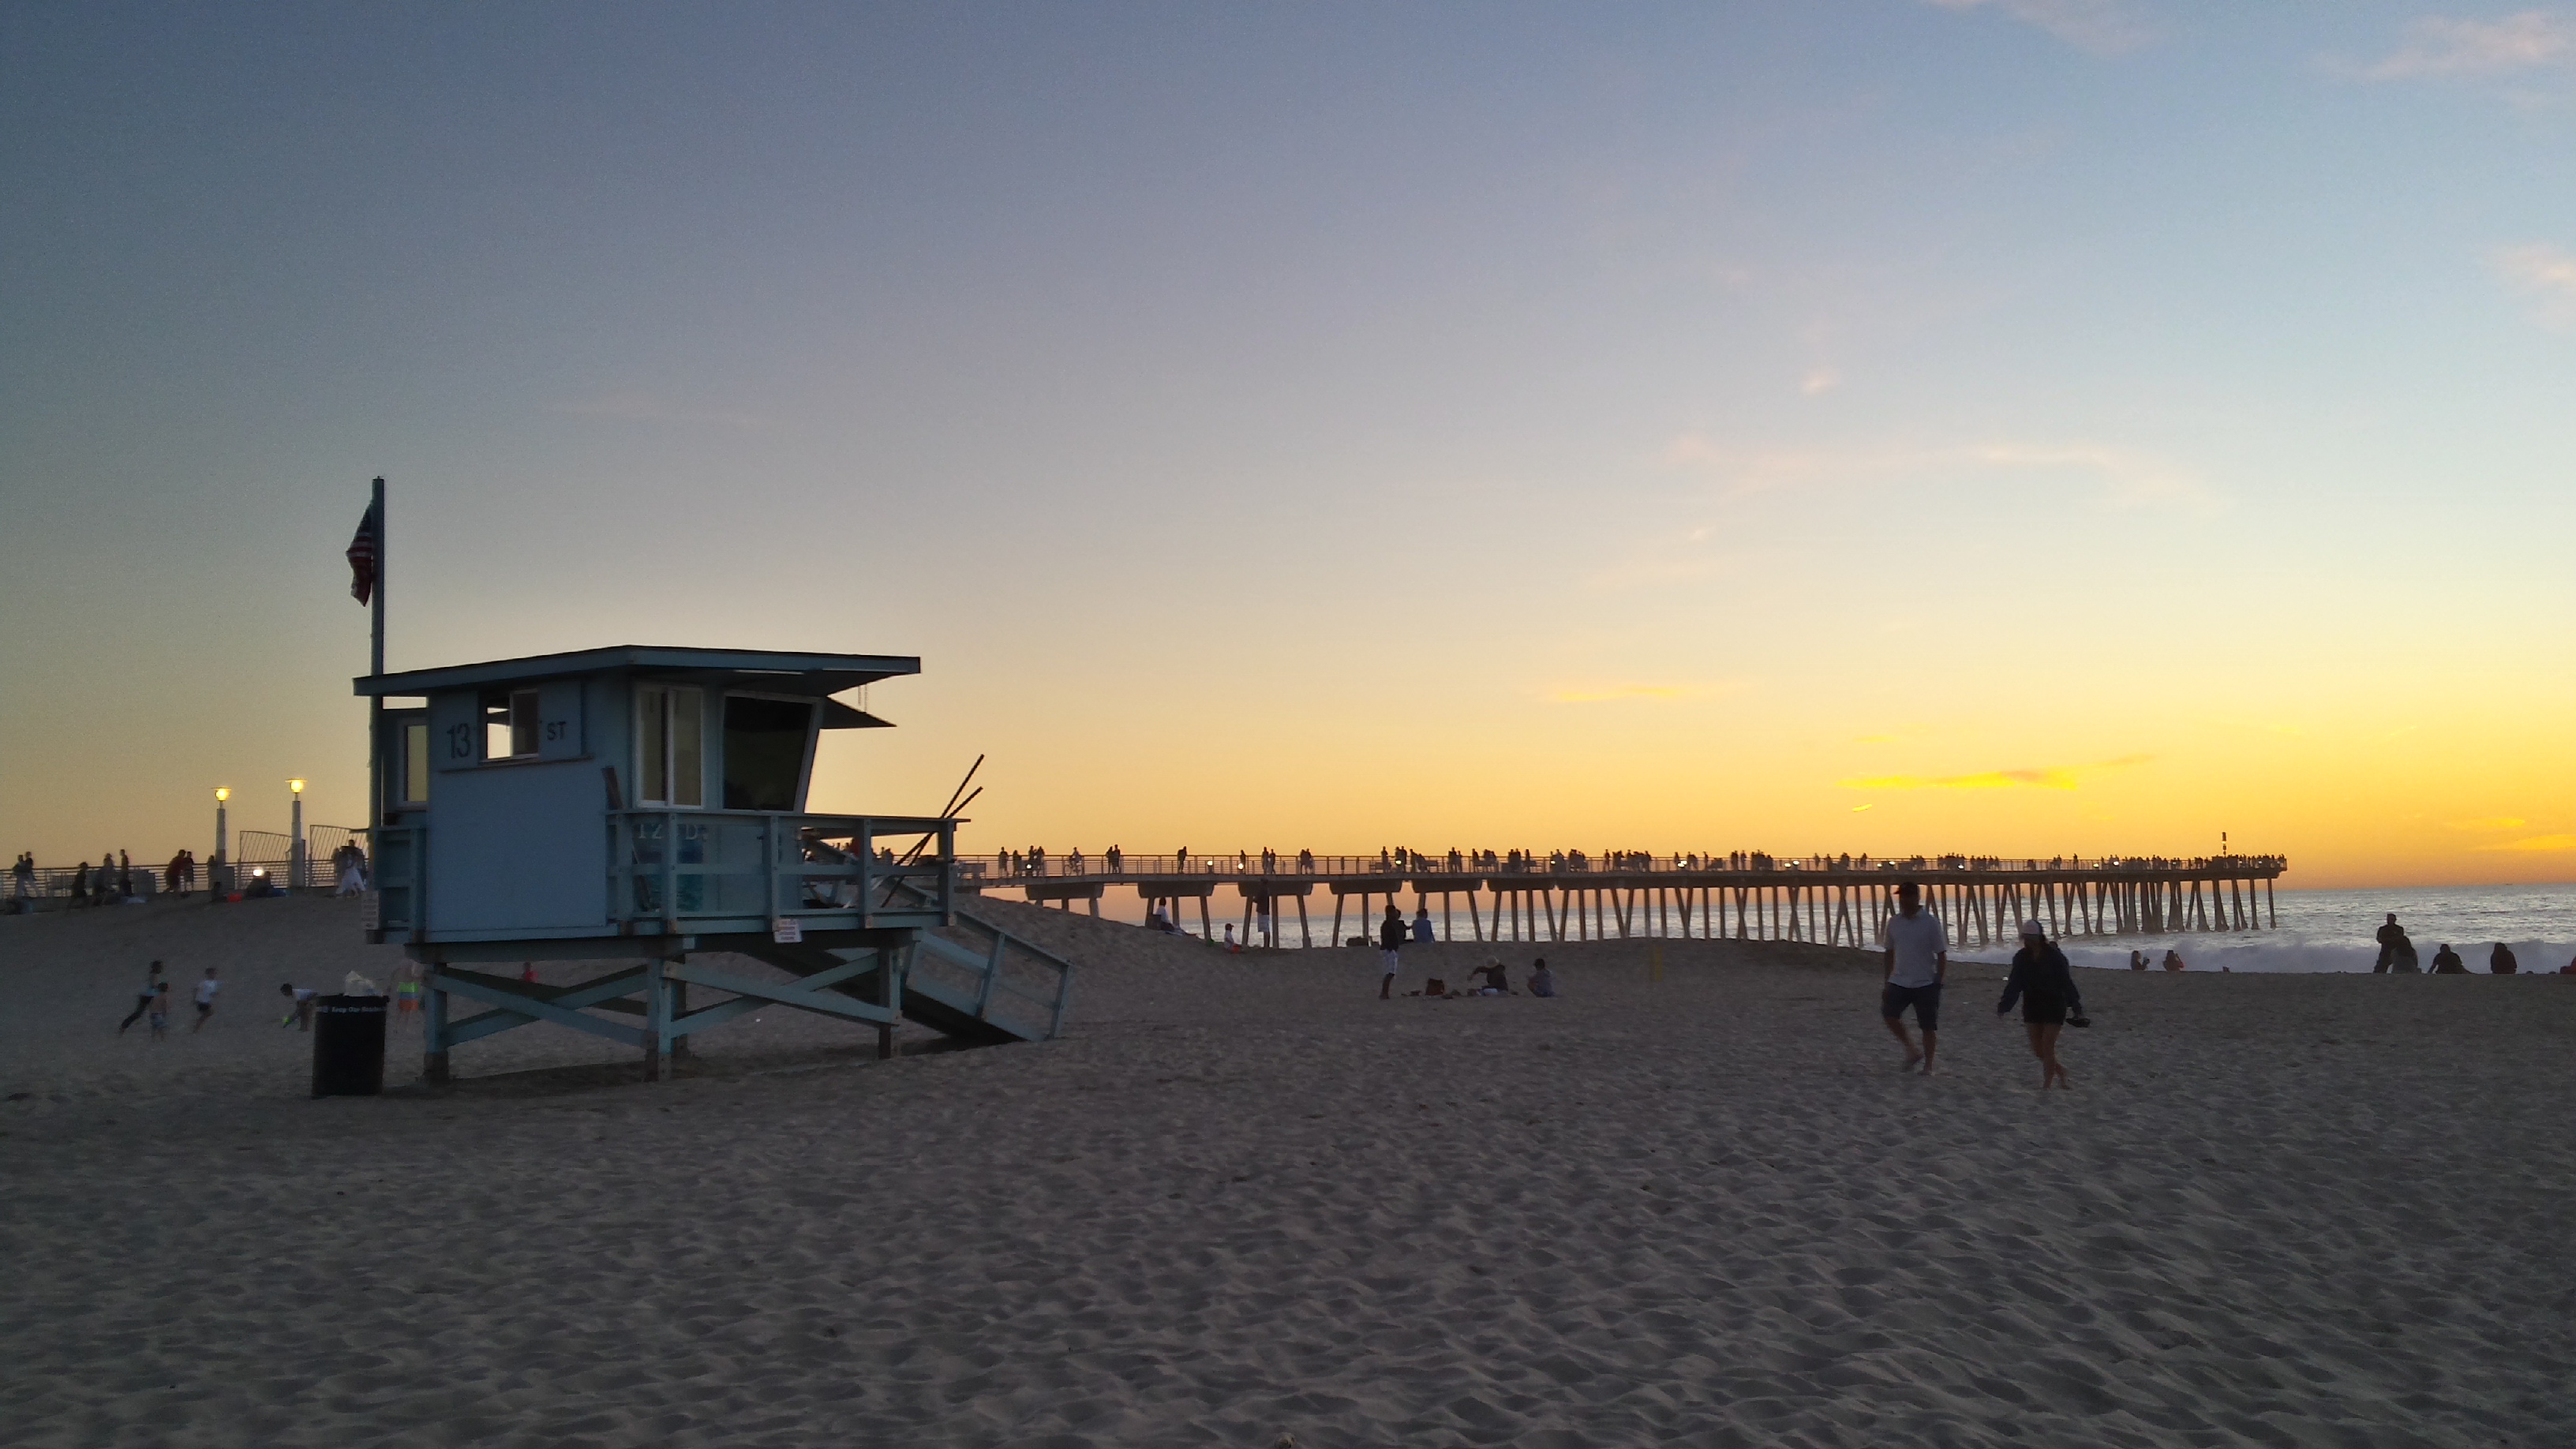 © C.Vuillemin / Coucher de soleil sur une plage de Californie